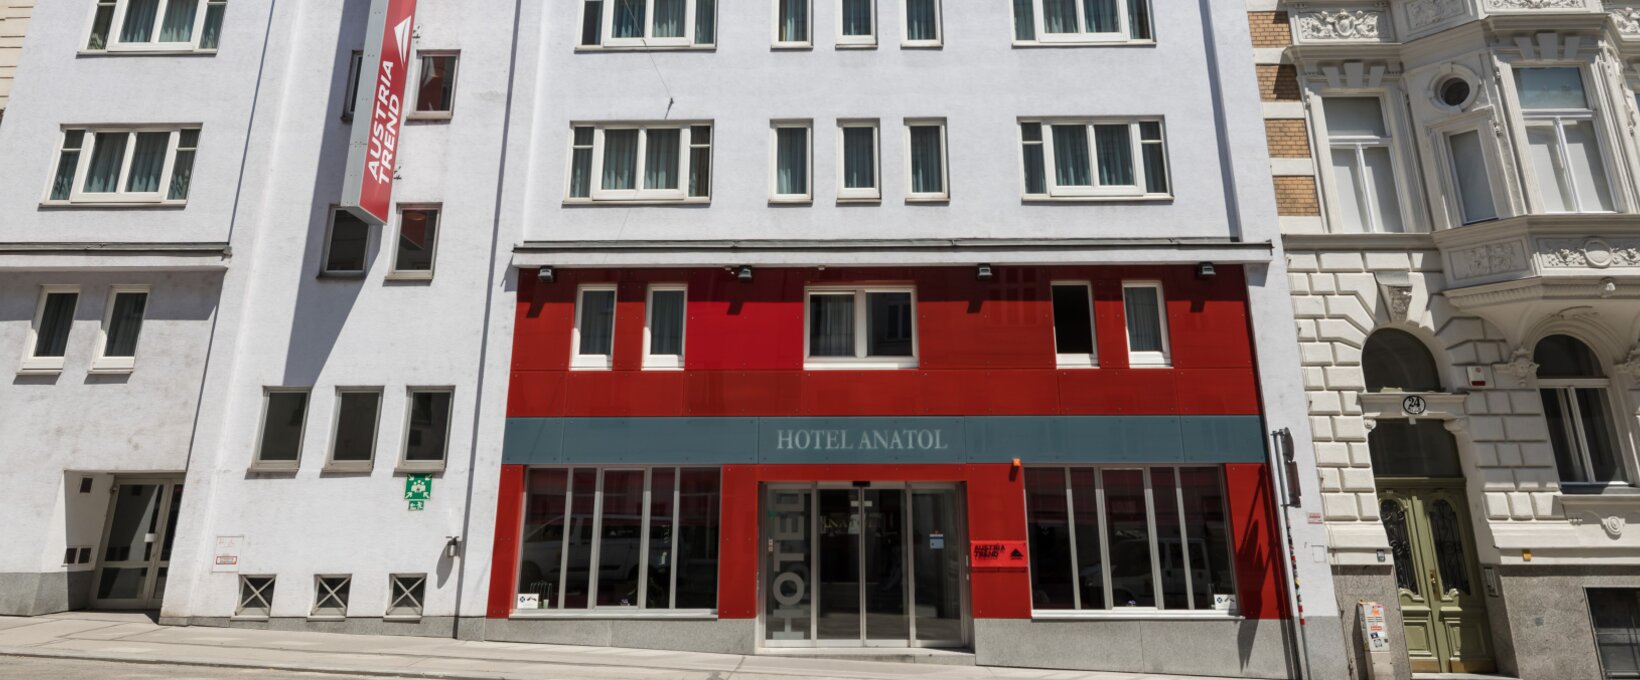 Außenansicht Hotel Eingang | Hotel Anatol in Wien